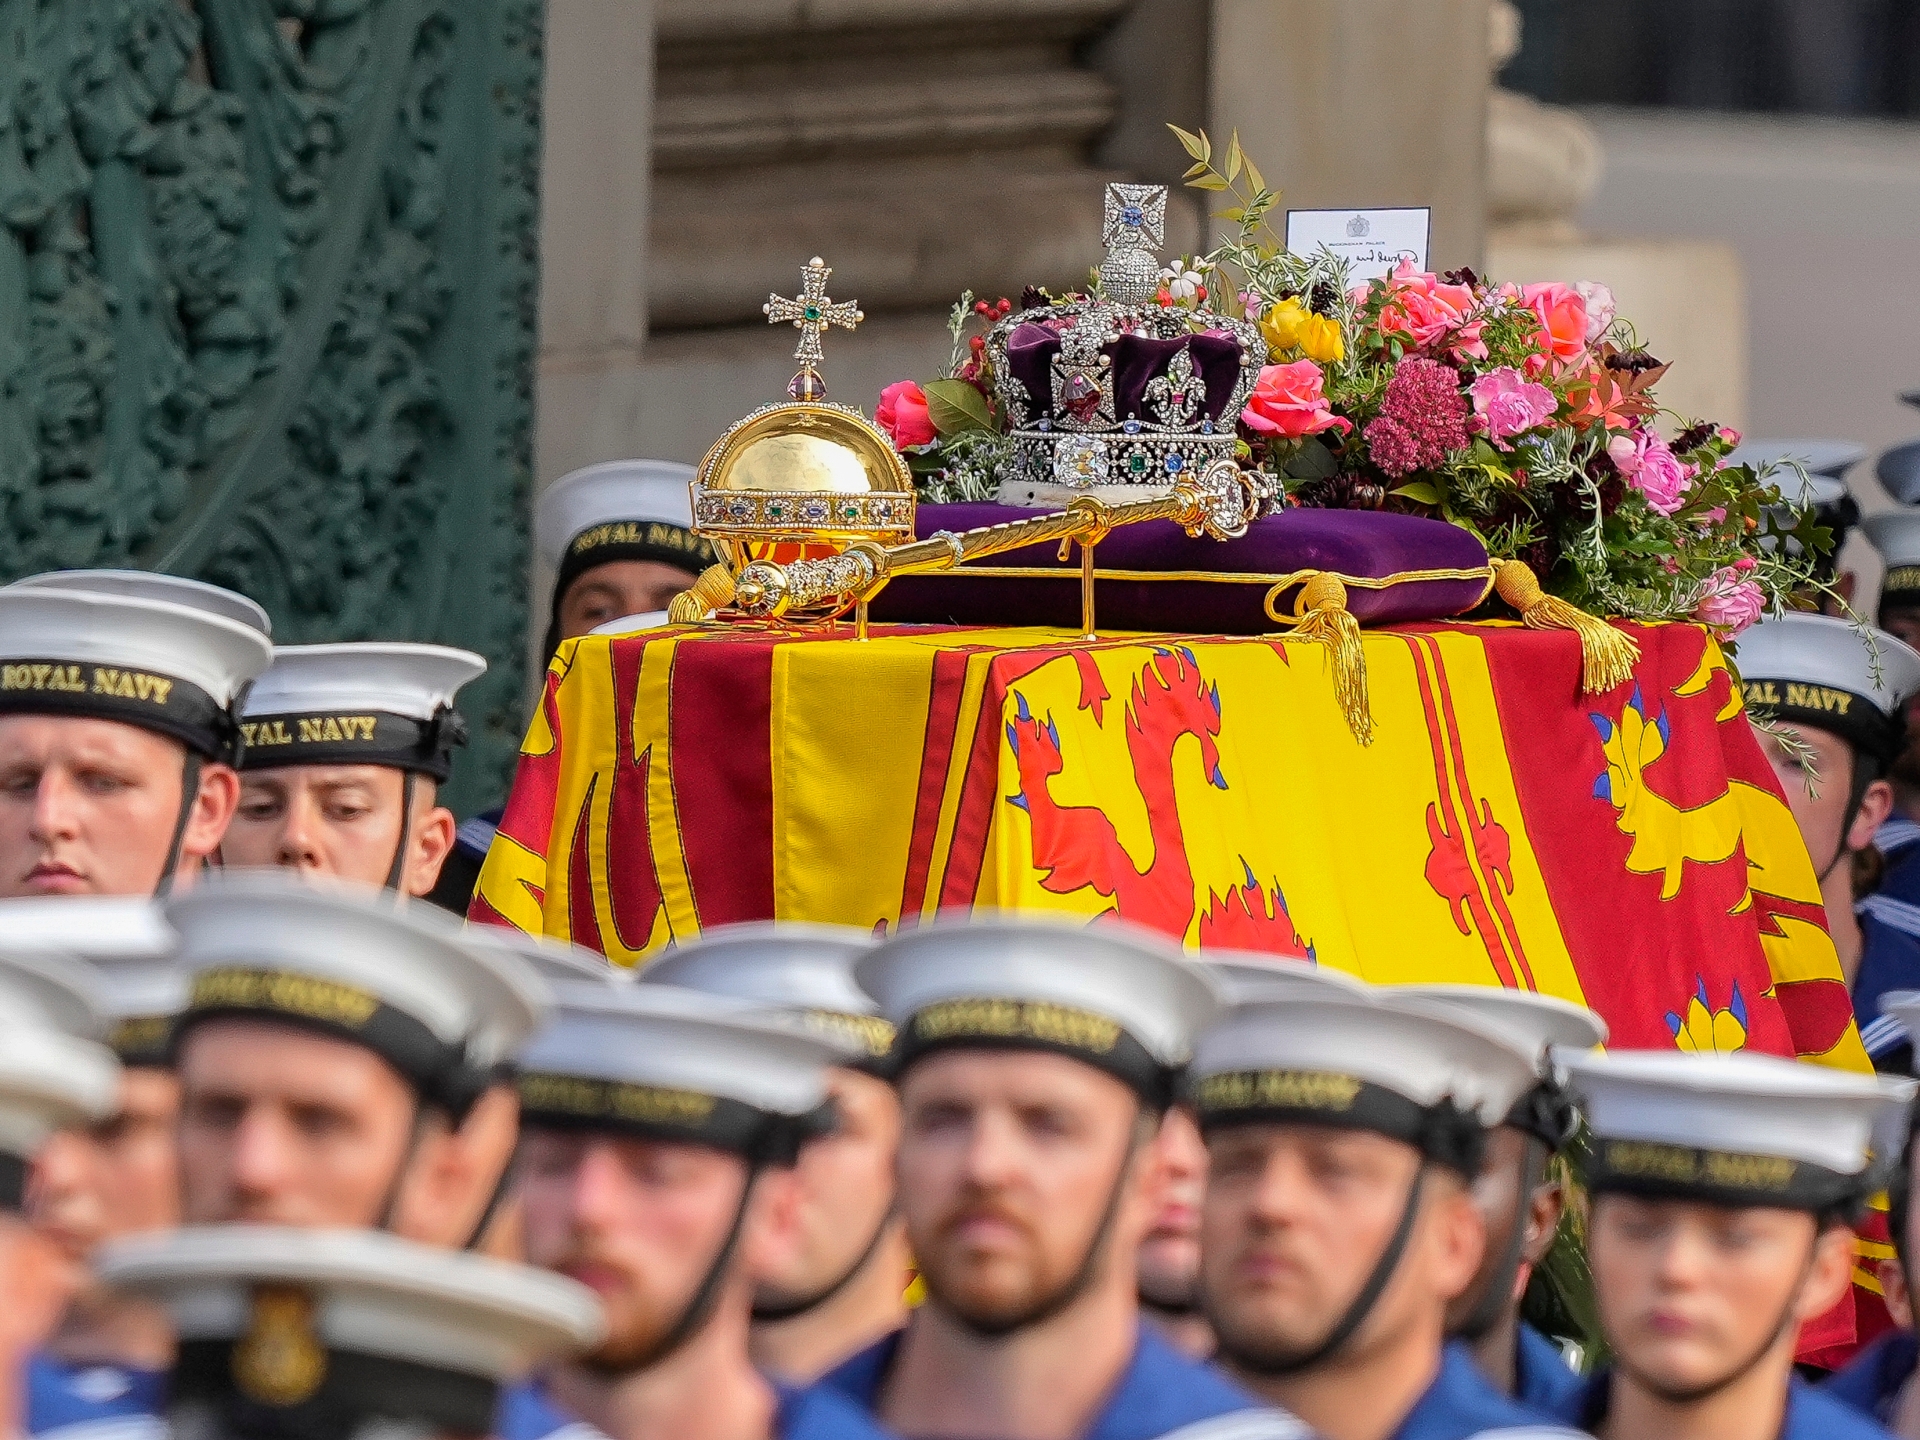 Fotografii: Marea Britanie deplânge Regina Elisabeta a II-a la înmormântarea de stat |  În Imagini Știri